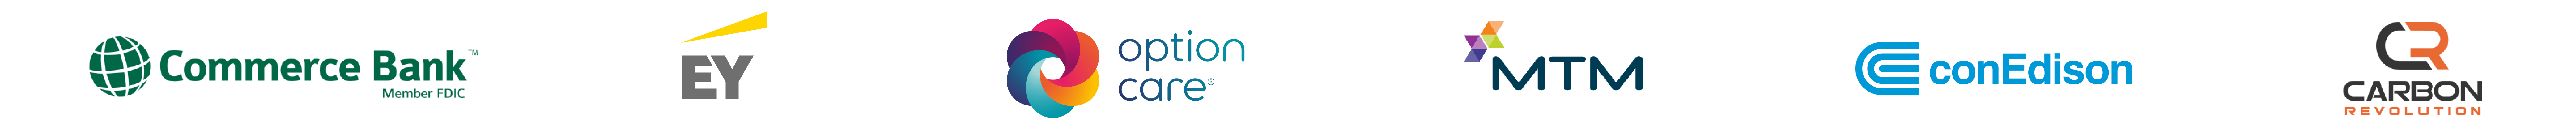 Bonfyre-client-logos